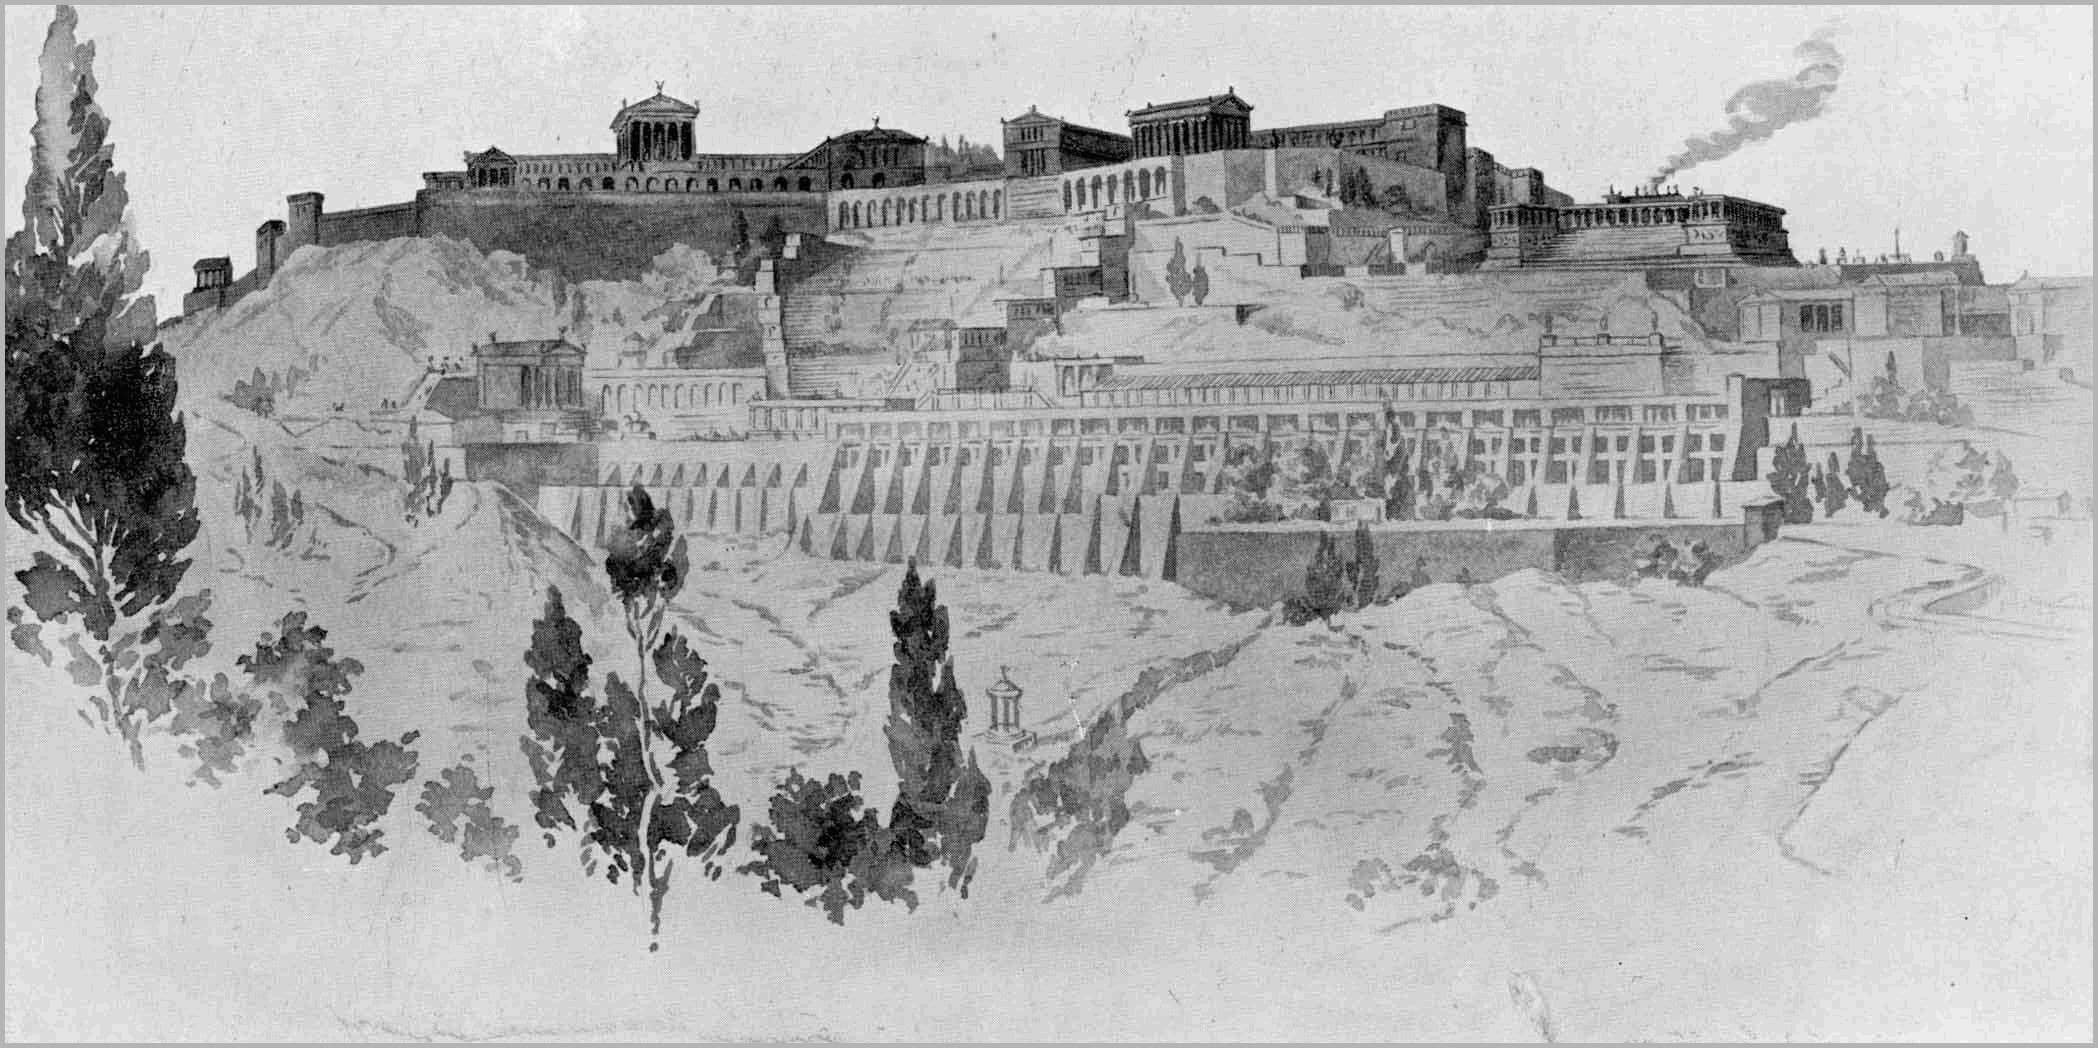 Pergamon city